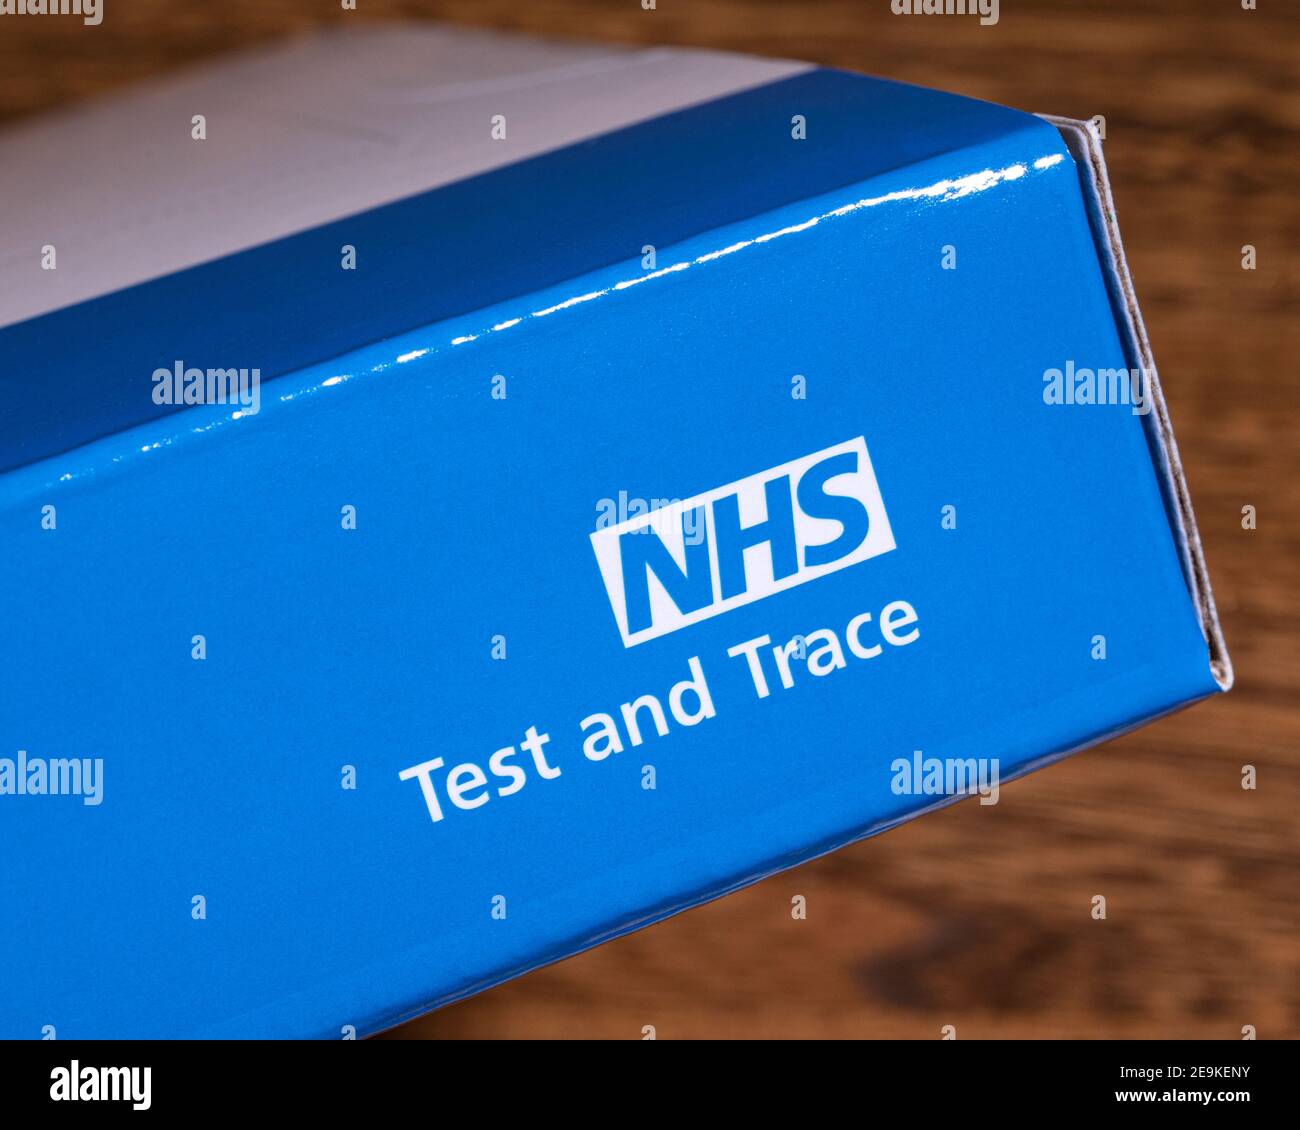 Londres, Royaume-Uni - 29 janvier 2021 : gros plan du symbole NHS Test and Trace, représenté sur un kit d'essai à domicile. Banque D'Images